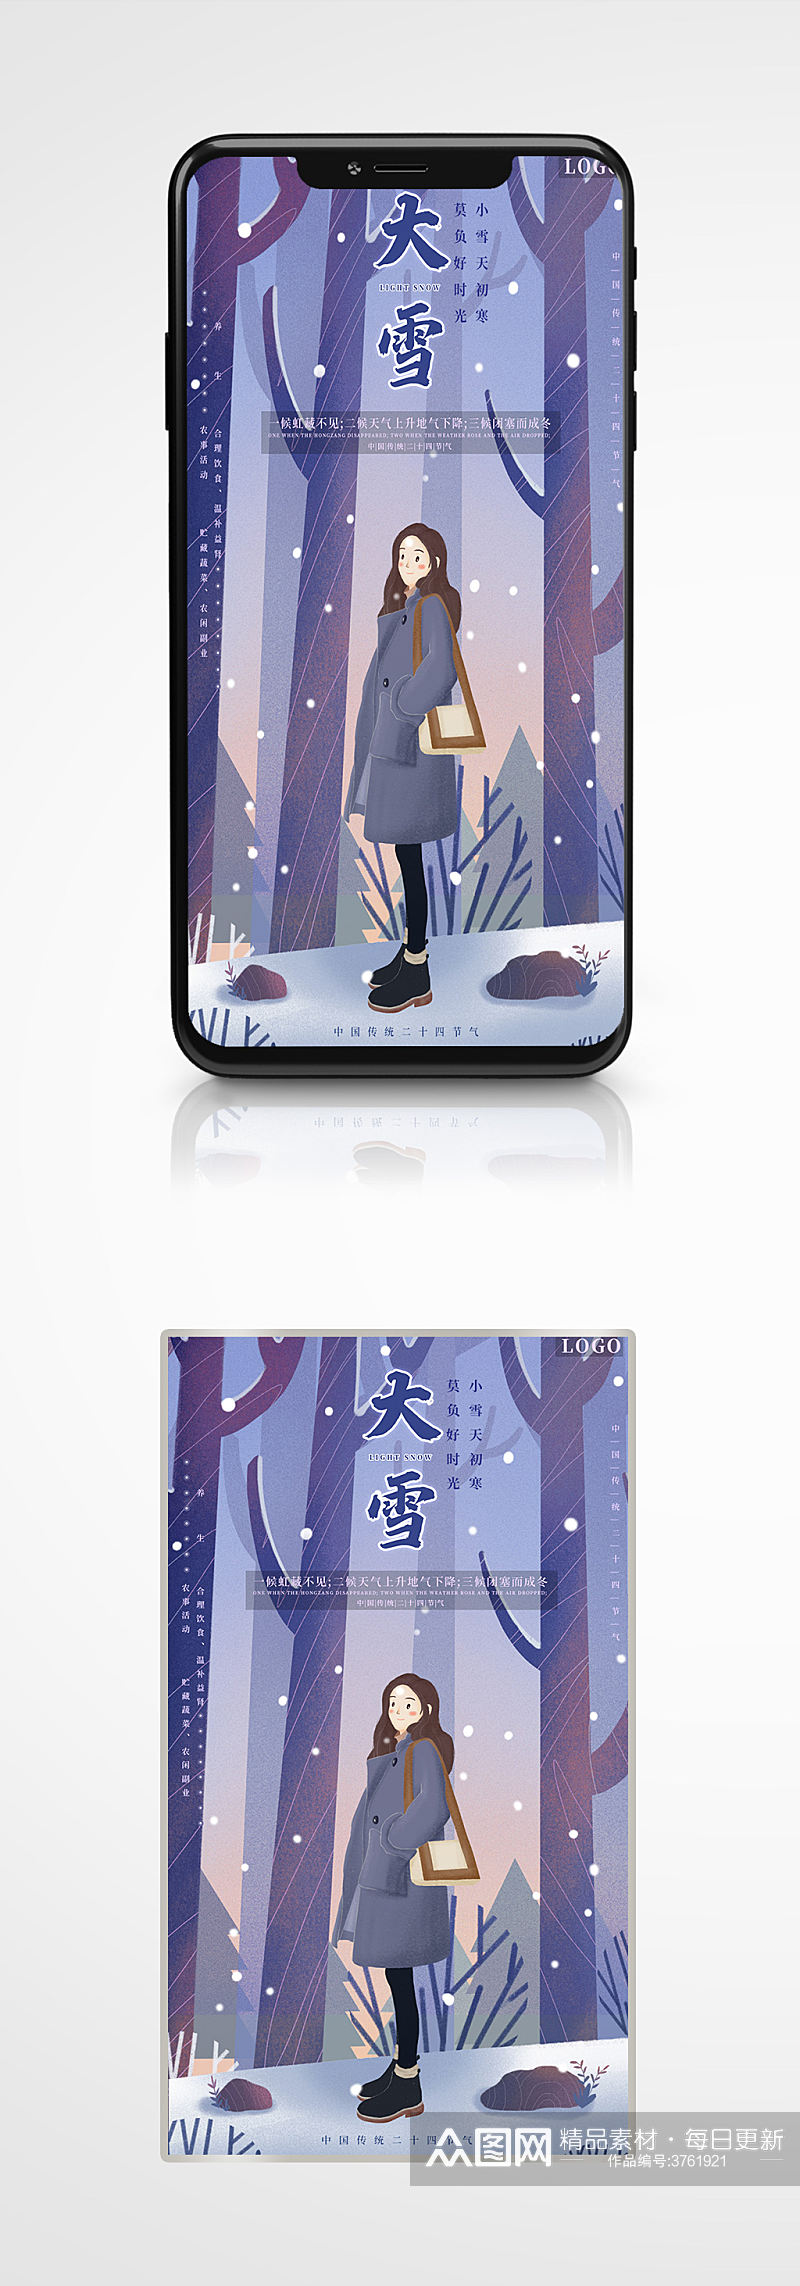 冬日大雪手机海报插画紫色节气素材